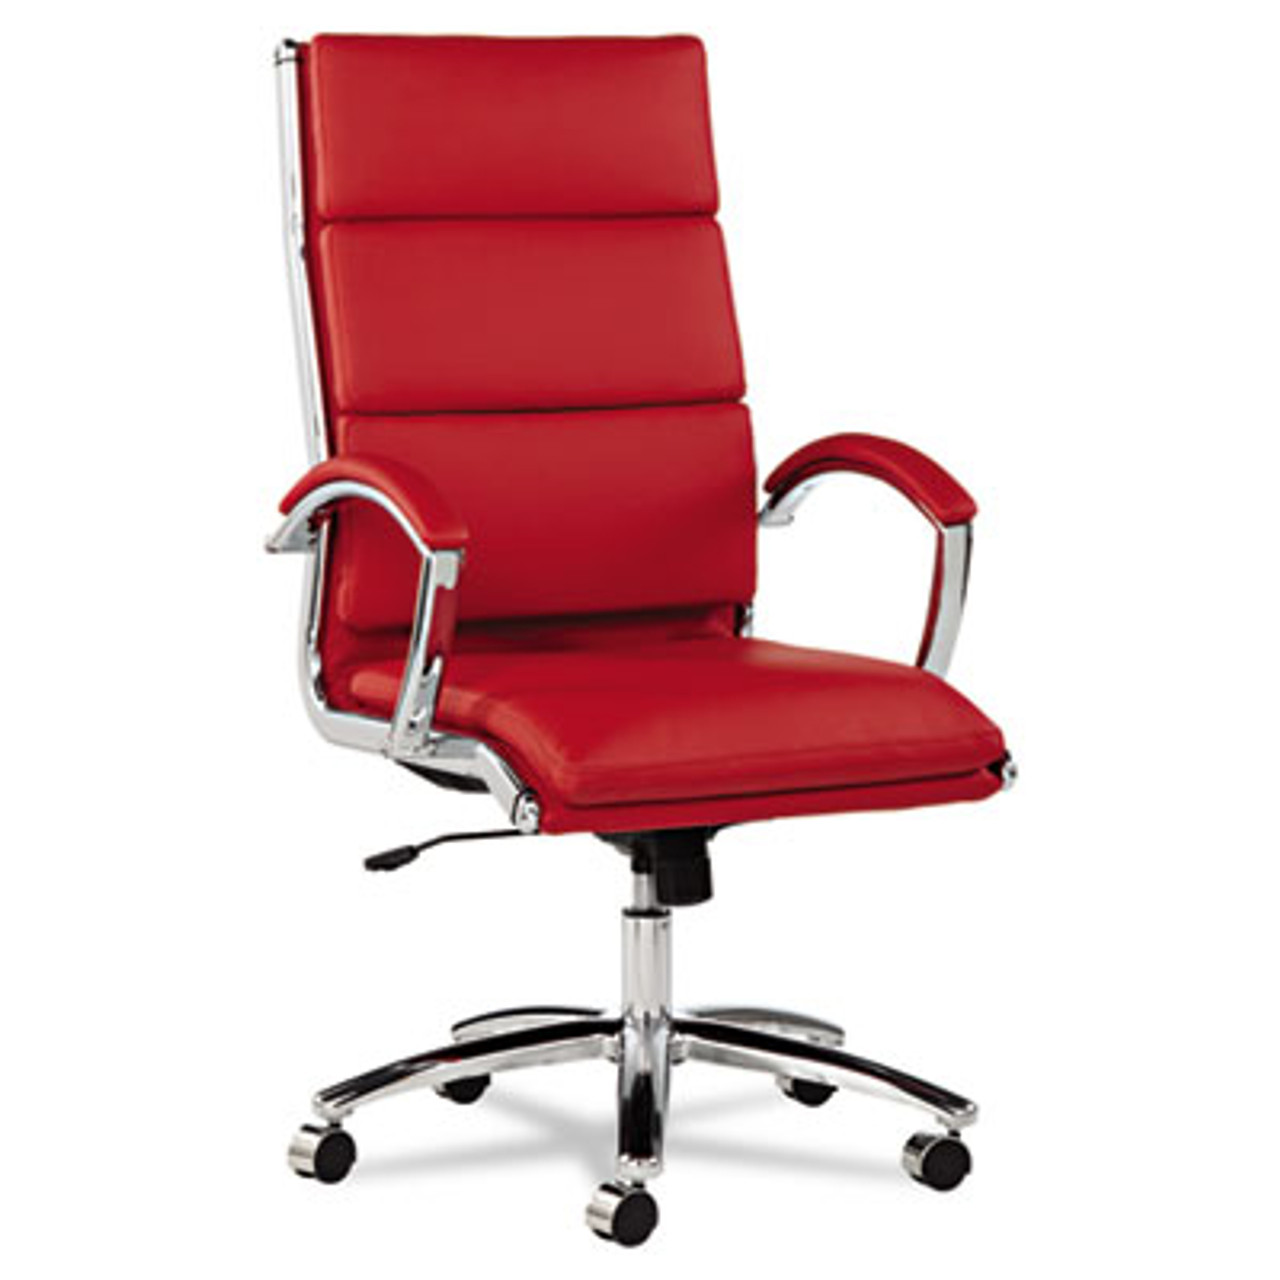 Neratoli Series High-Back Swivel/Tilt Chair, Red Soft Leather, Chrome Frame